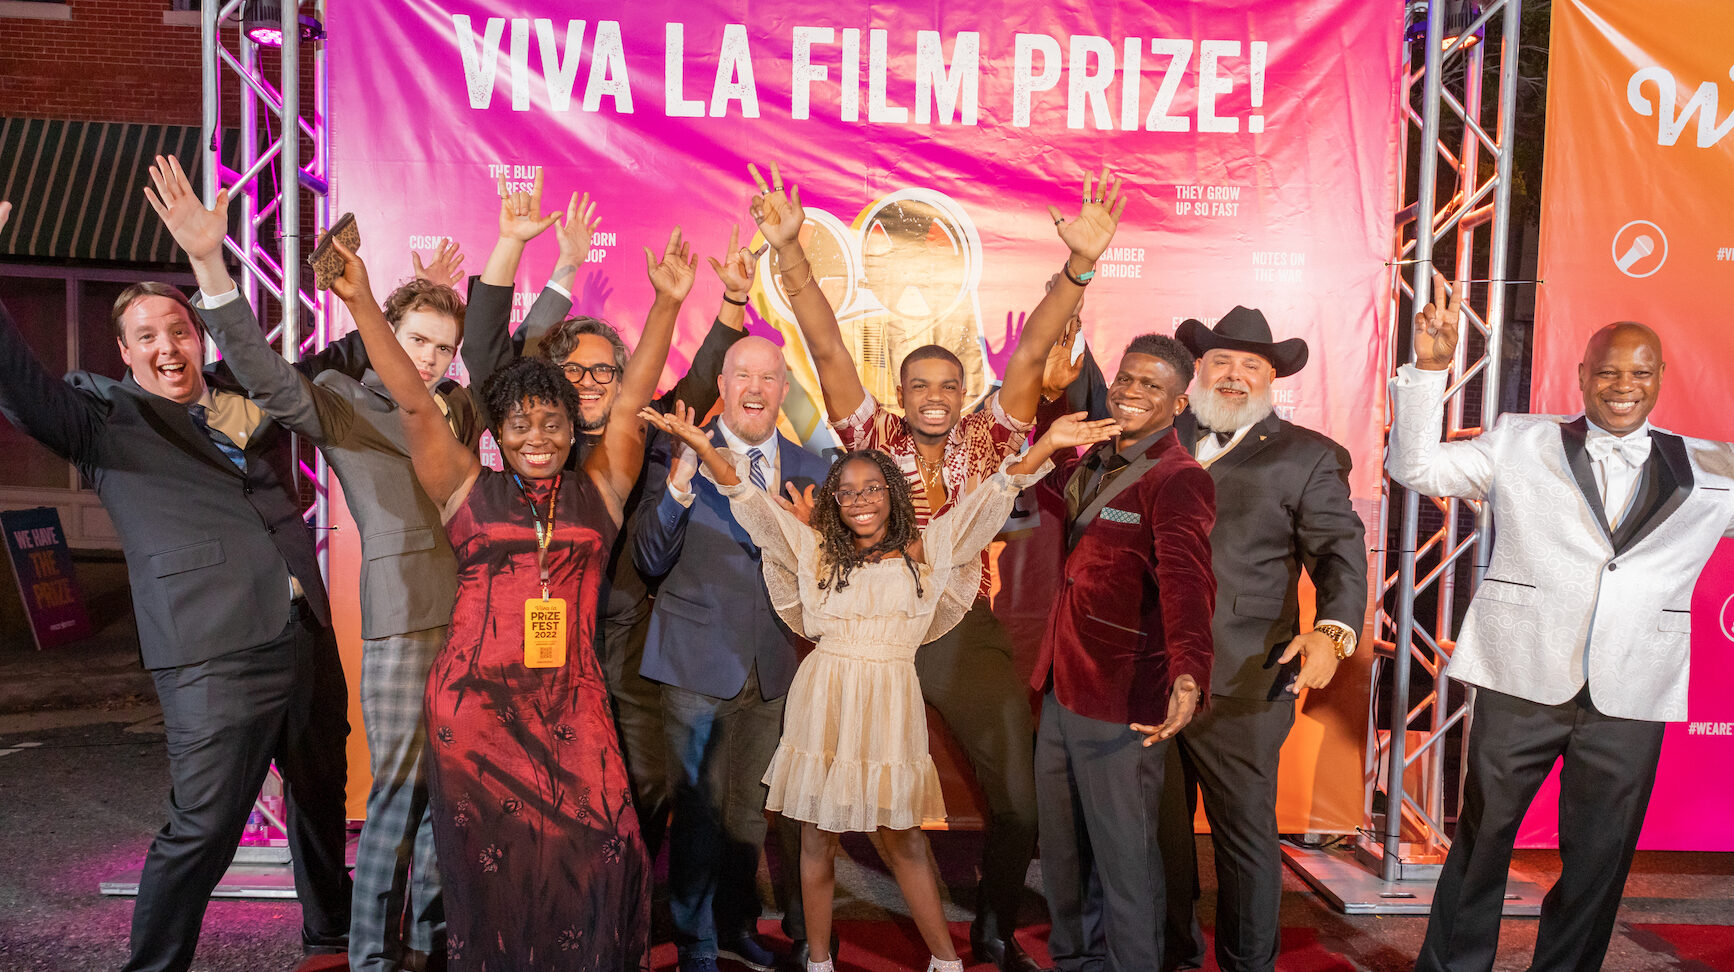 Film Prize Red Carpet Hands Up